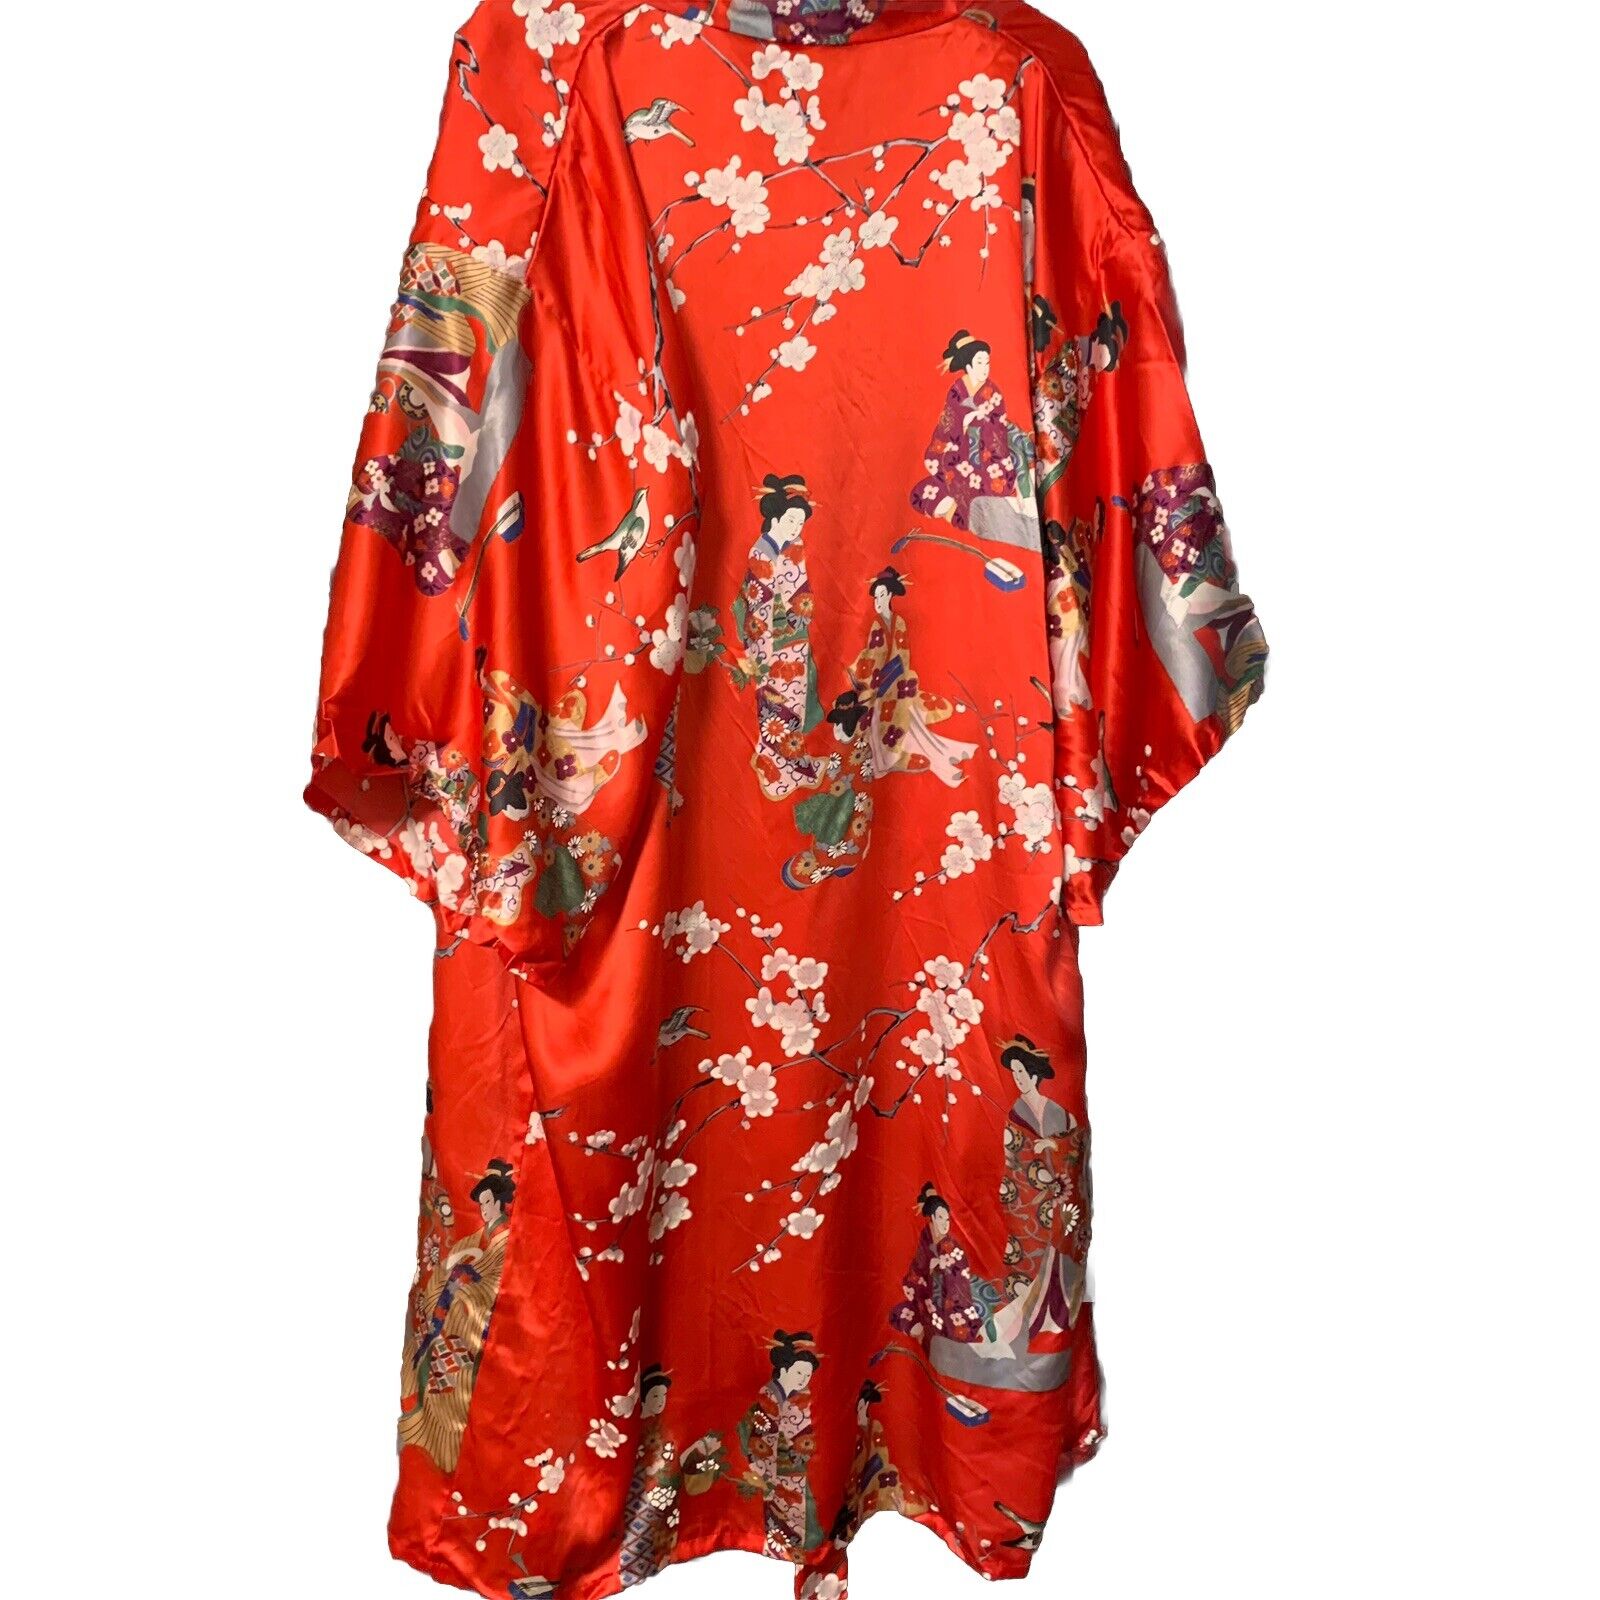 Vtg 100% Silk Japanese Robe Geisha Waist Tie Made In Japan Red Satin Bird Flower